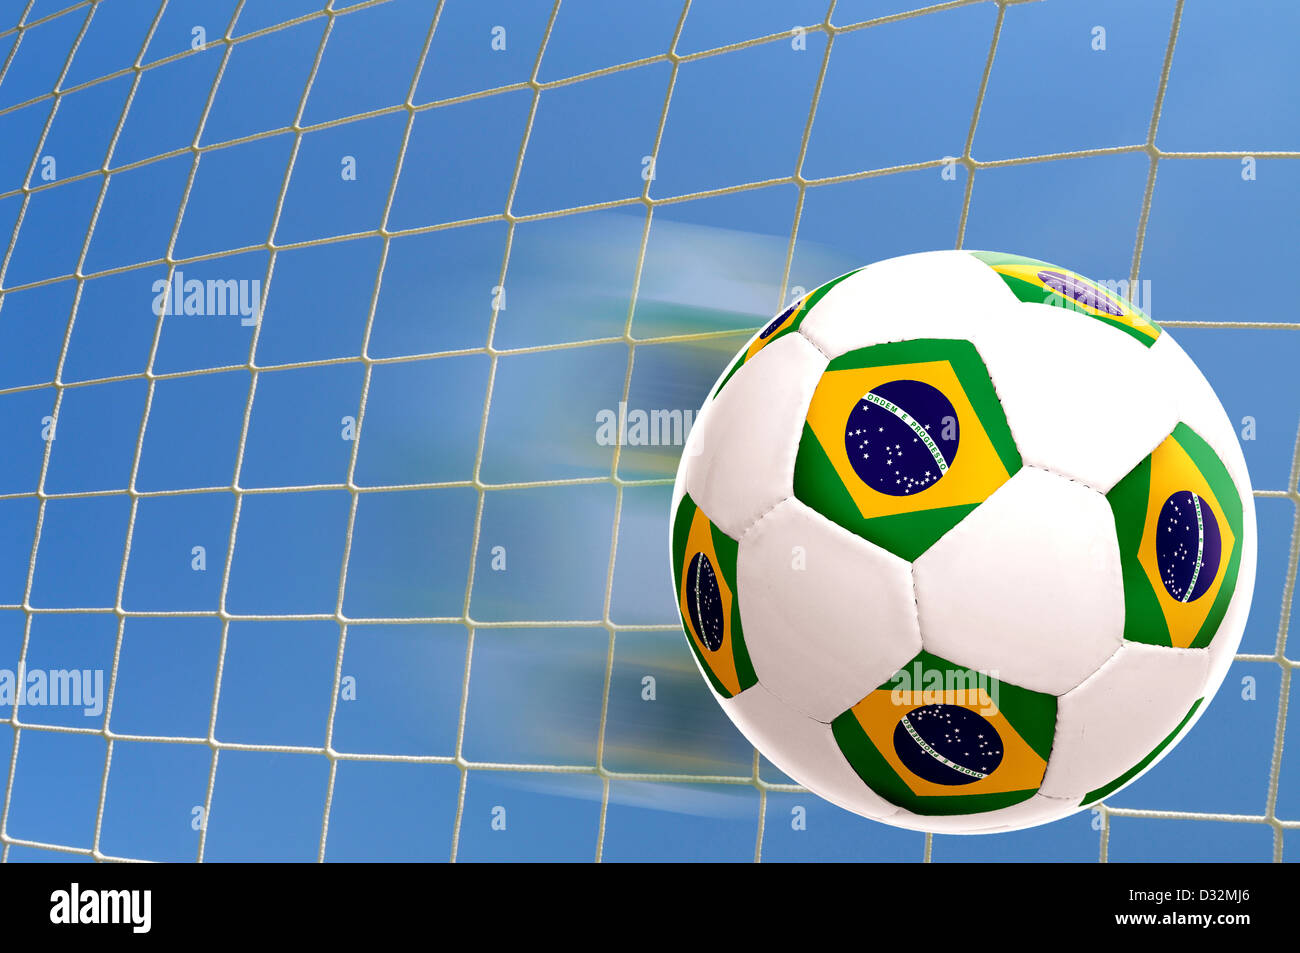 Brazilian flag soccer ball over a goal's net Stock Photo